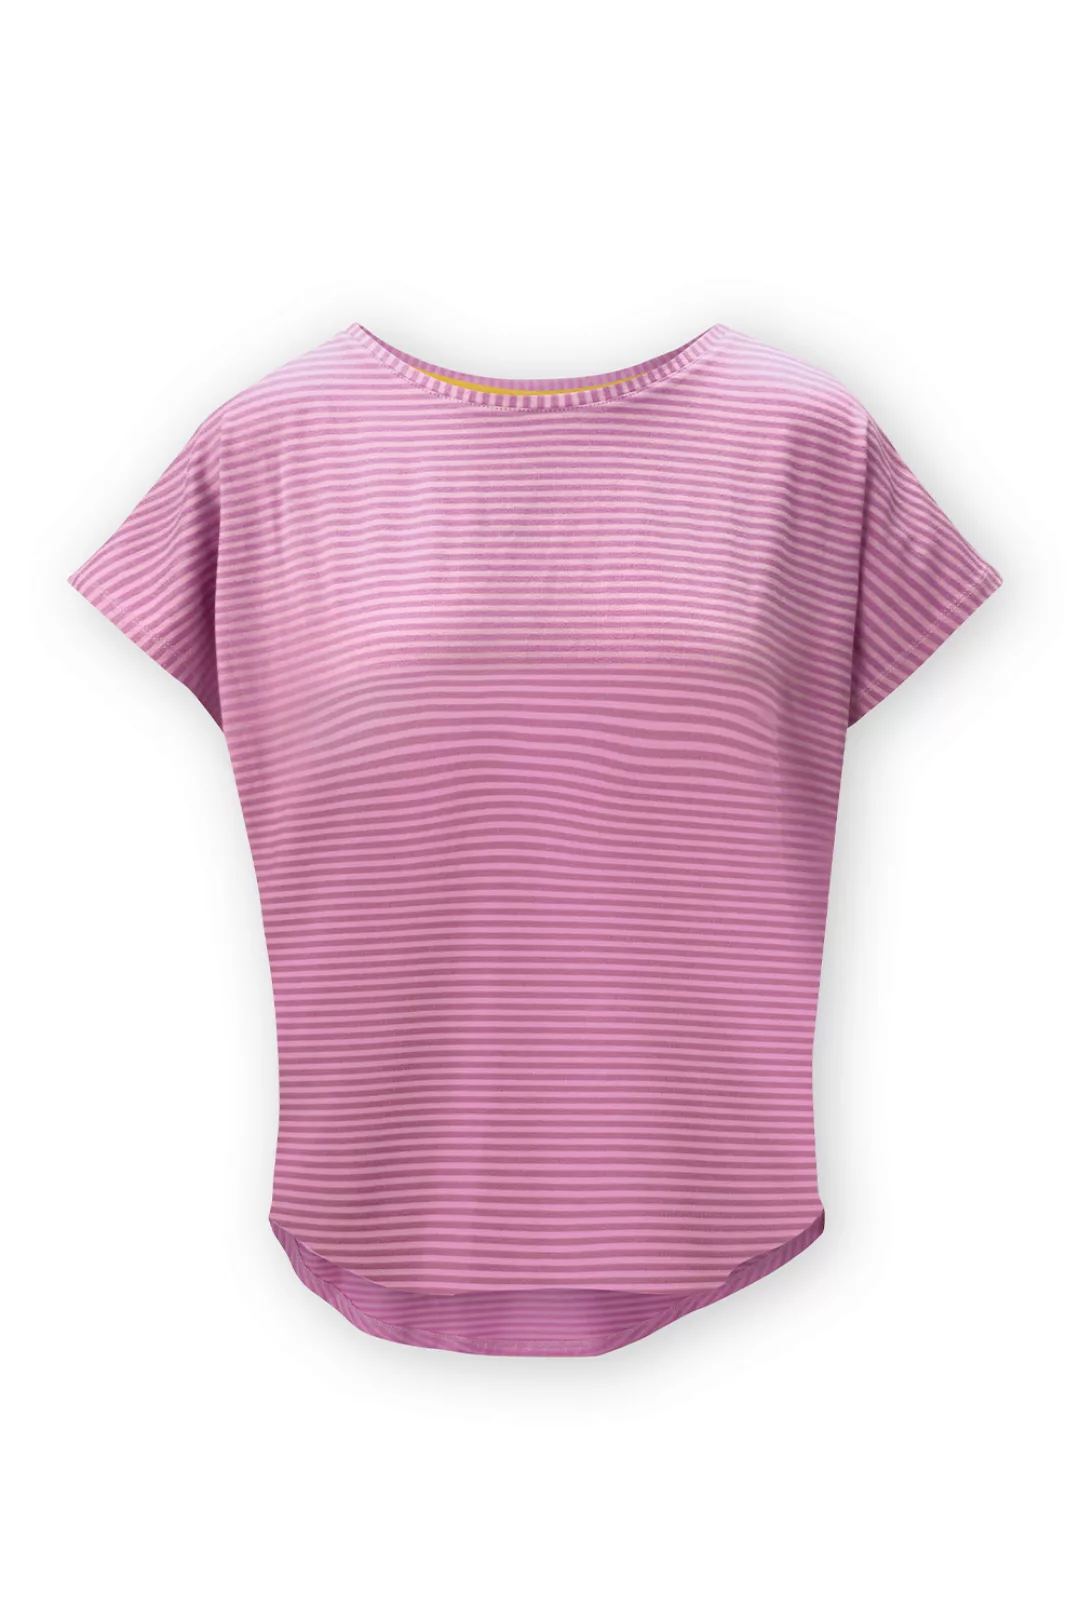 Pip Studio Tatum Little Sumo Kurzarmshirt Loungewear 4 40 violett günstig online kaufen